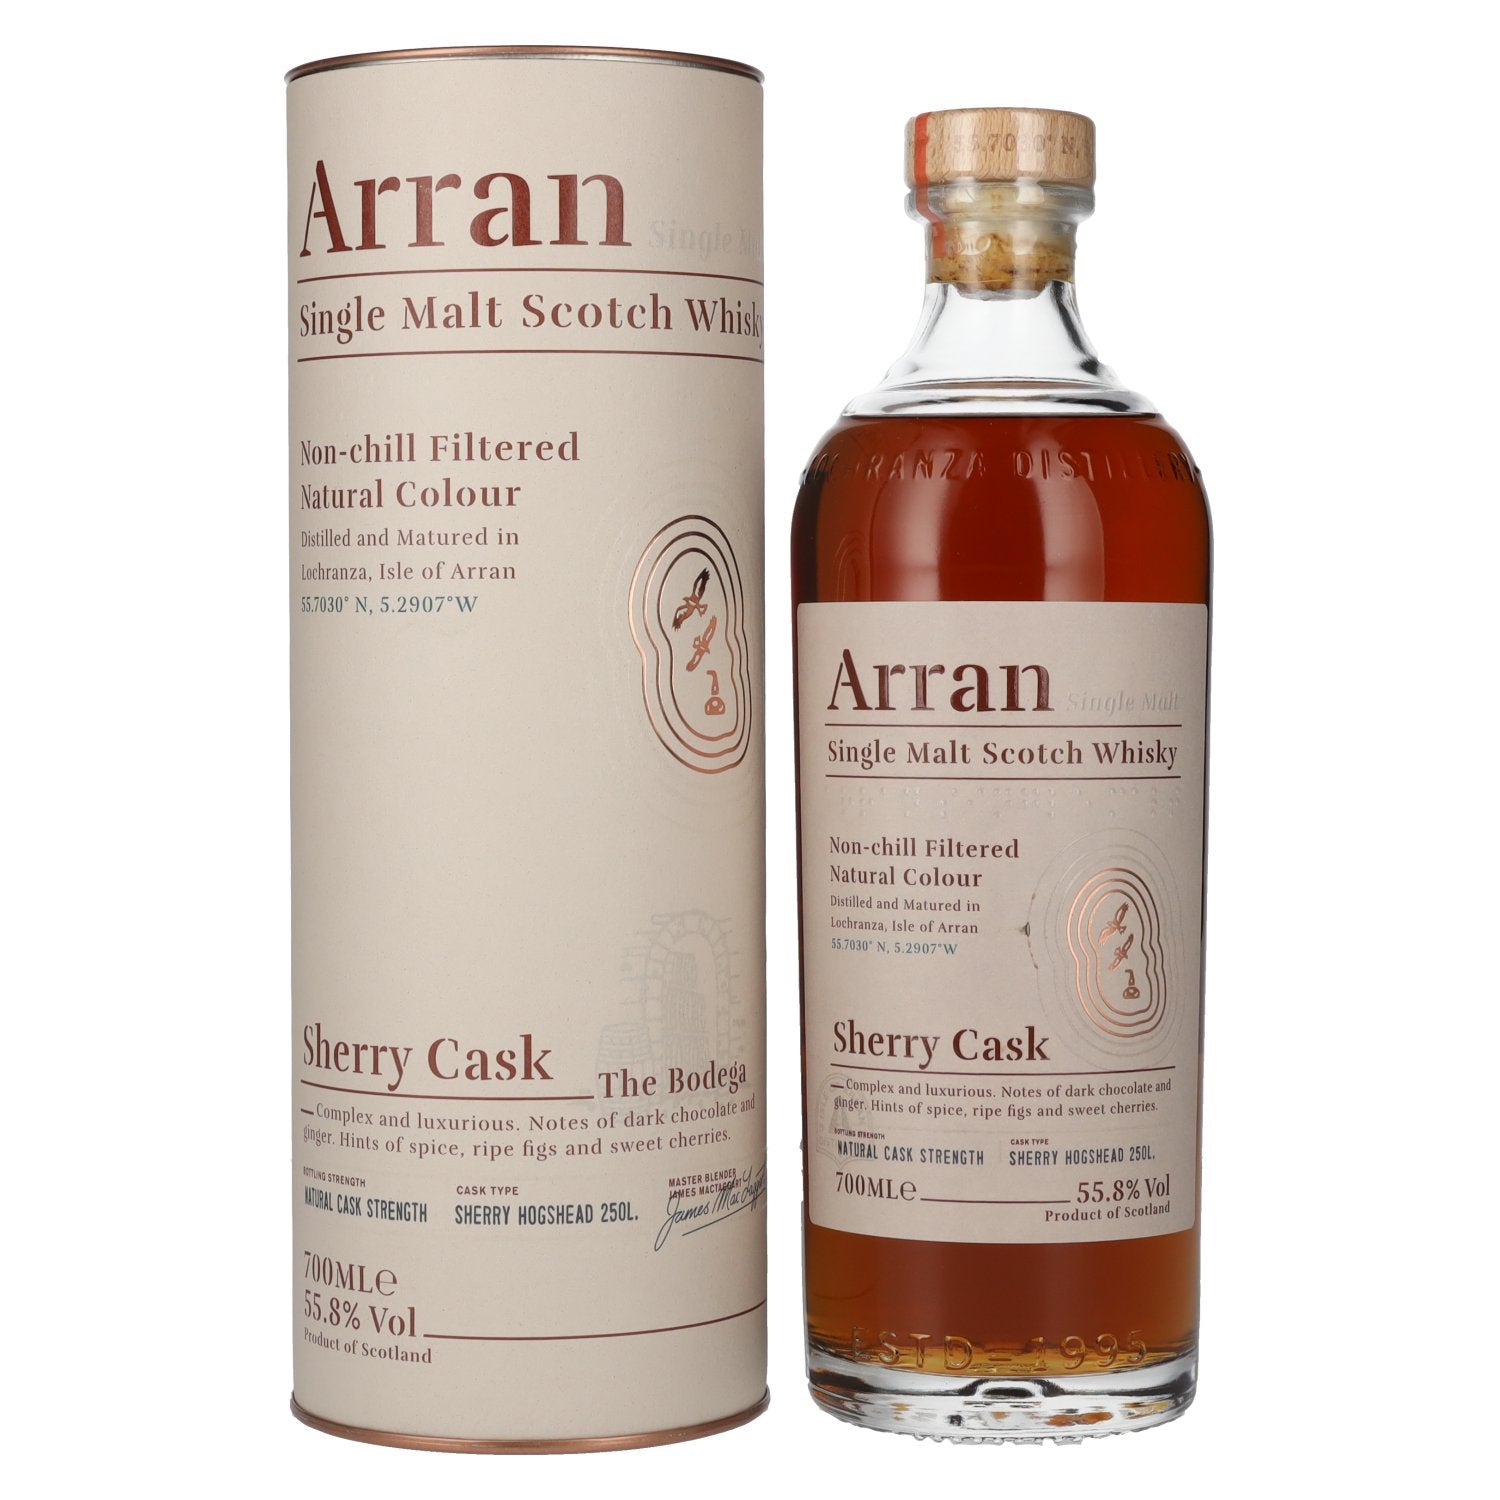 Arran Sherry Cask Whisky Scotch Whisky Scotch Single Malt Whisky with Gift Box 700ml 55.8%